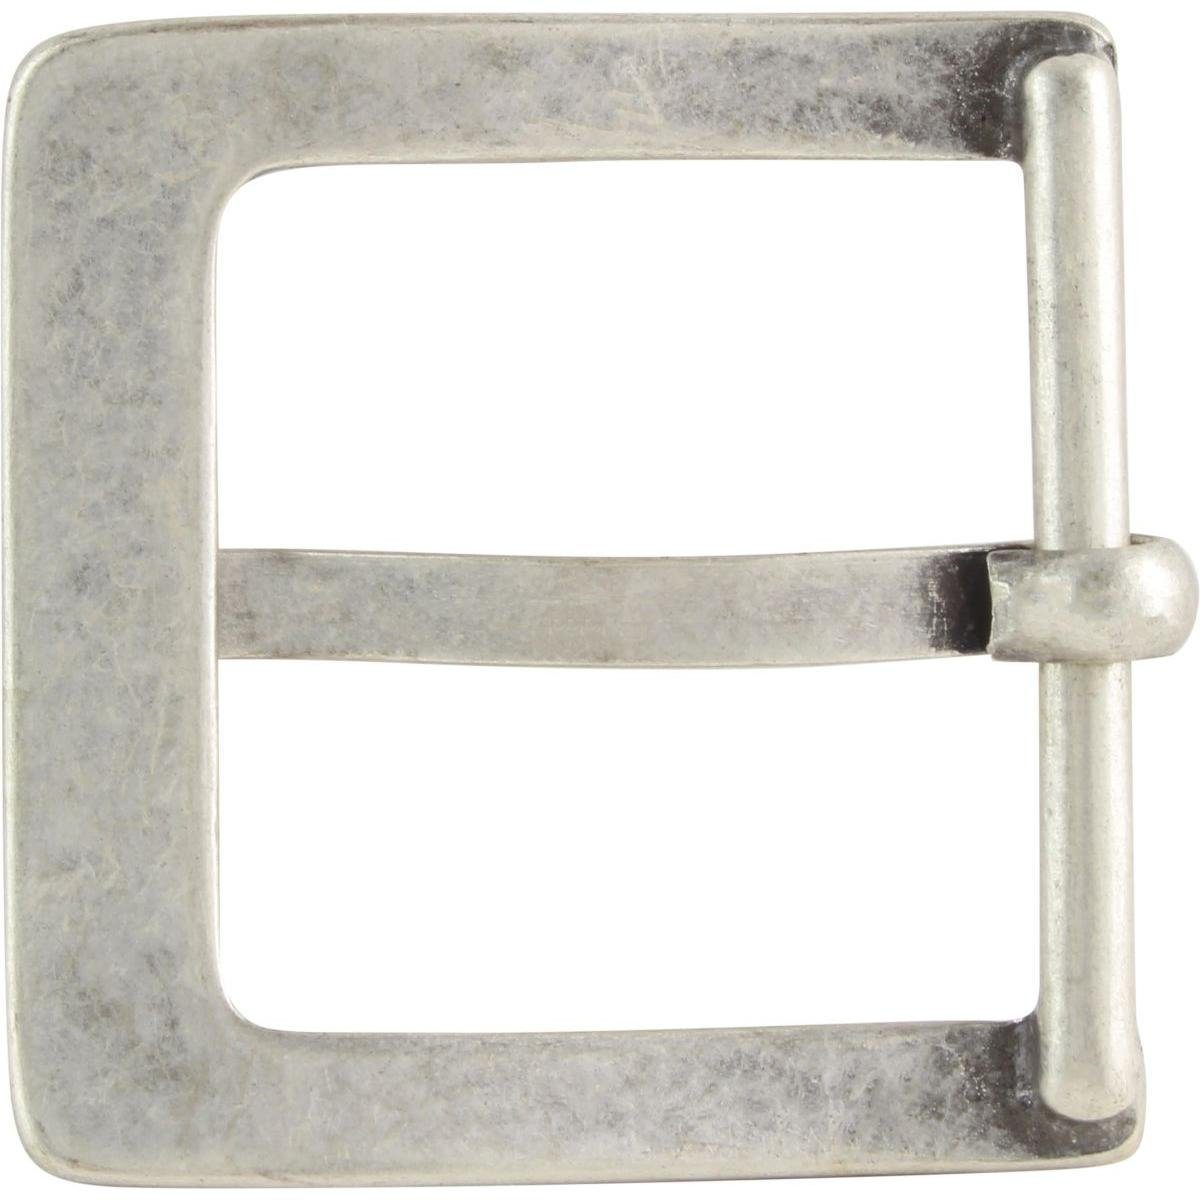 BELTINGER Dorn-Schließe 5,0 - bis Gürtelschnalle Für B cm - zu 5cm 50mm Gürtel - Gürtelschließe Silber